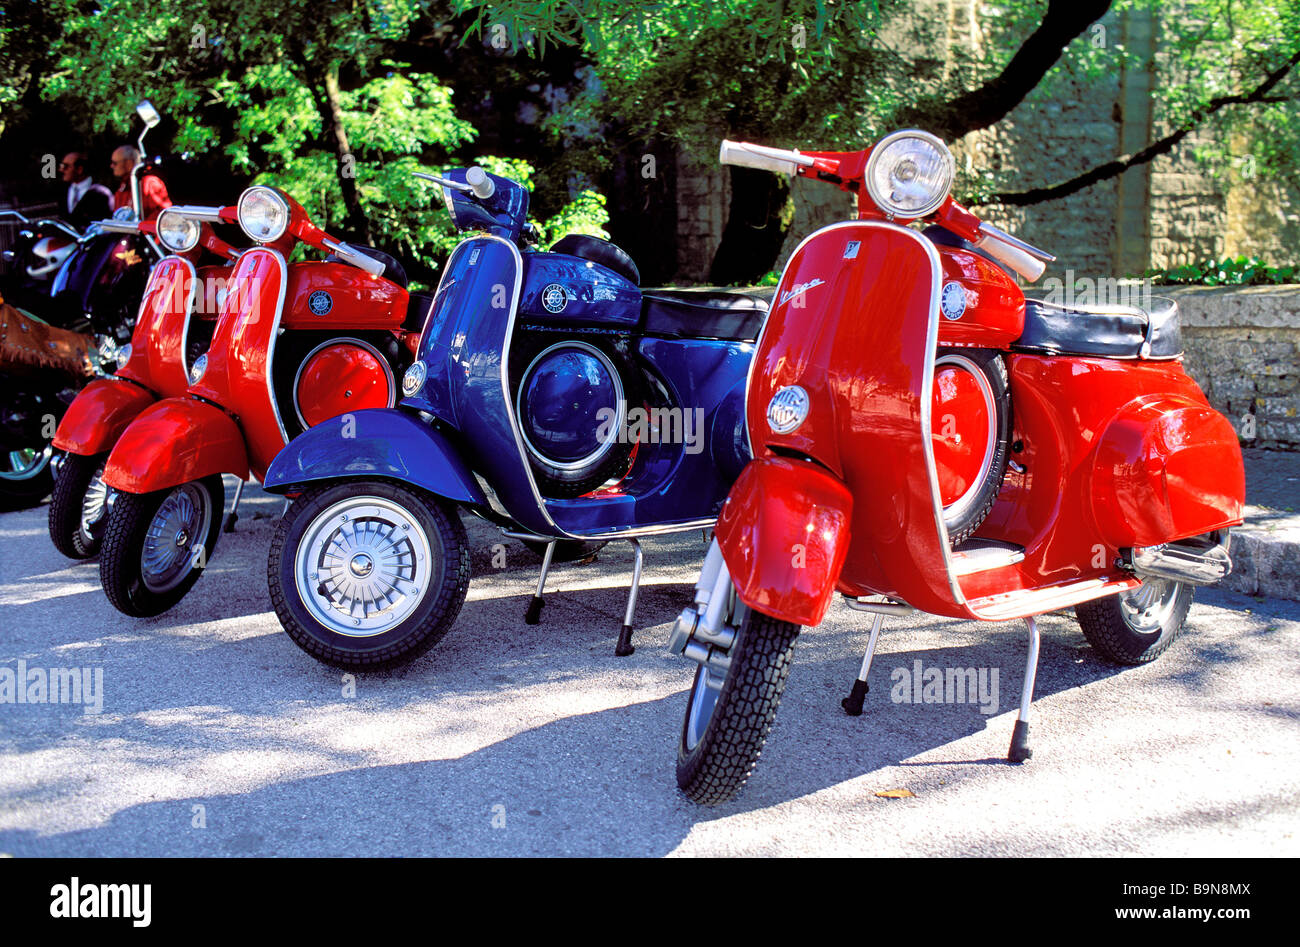 Italy, Sicily, Noto, a Vespa, Piaggio moto scooter Stock Photo